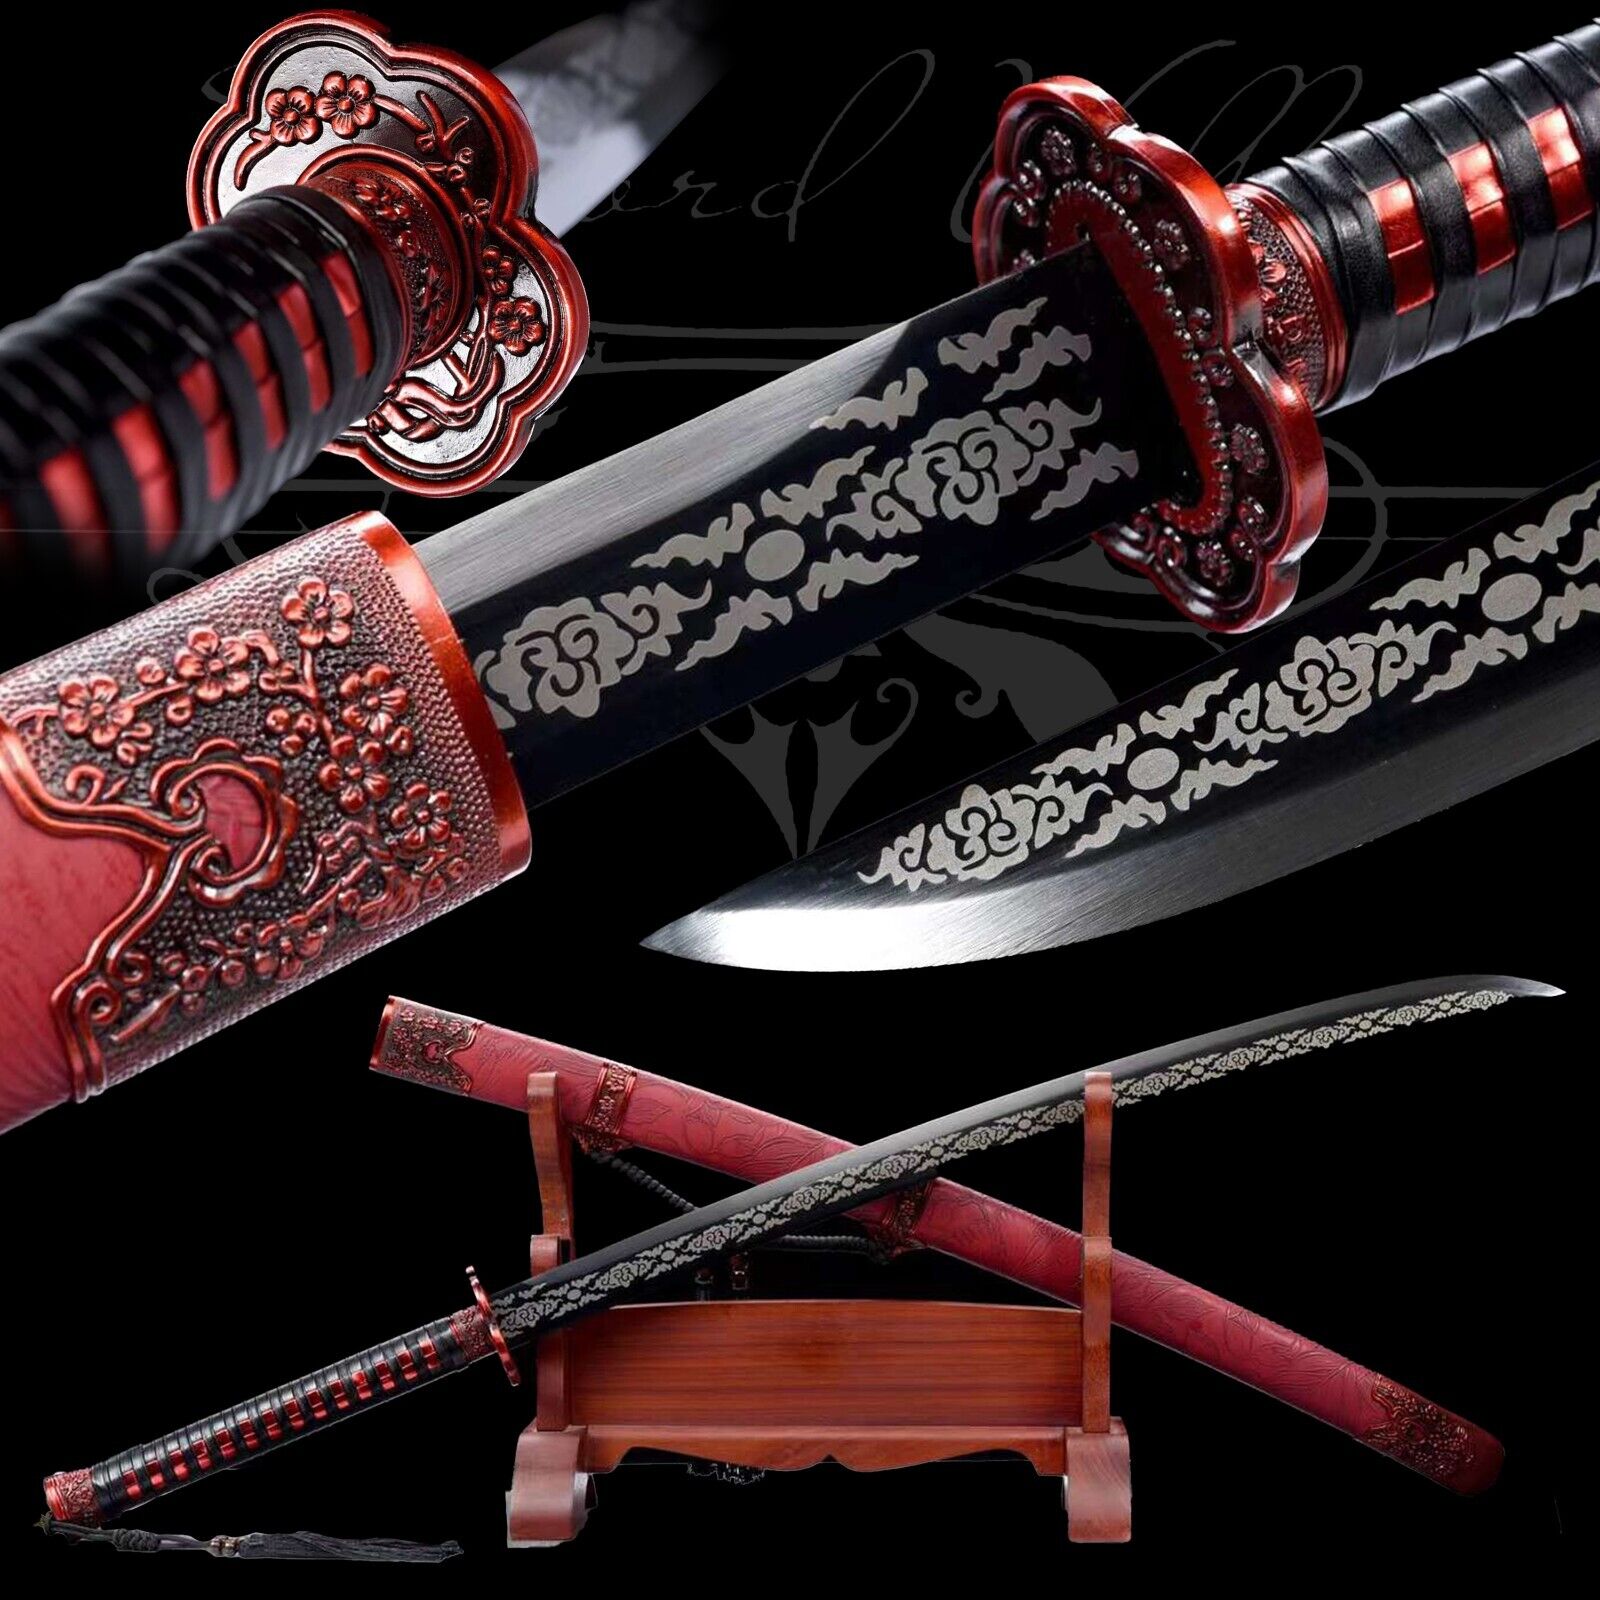 Handmade Katana/Manganese Steel/Fighting Master/Real Samurai Sword/Red/Sharpe